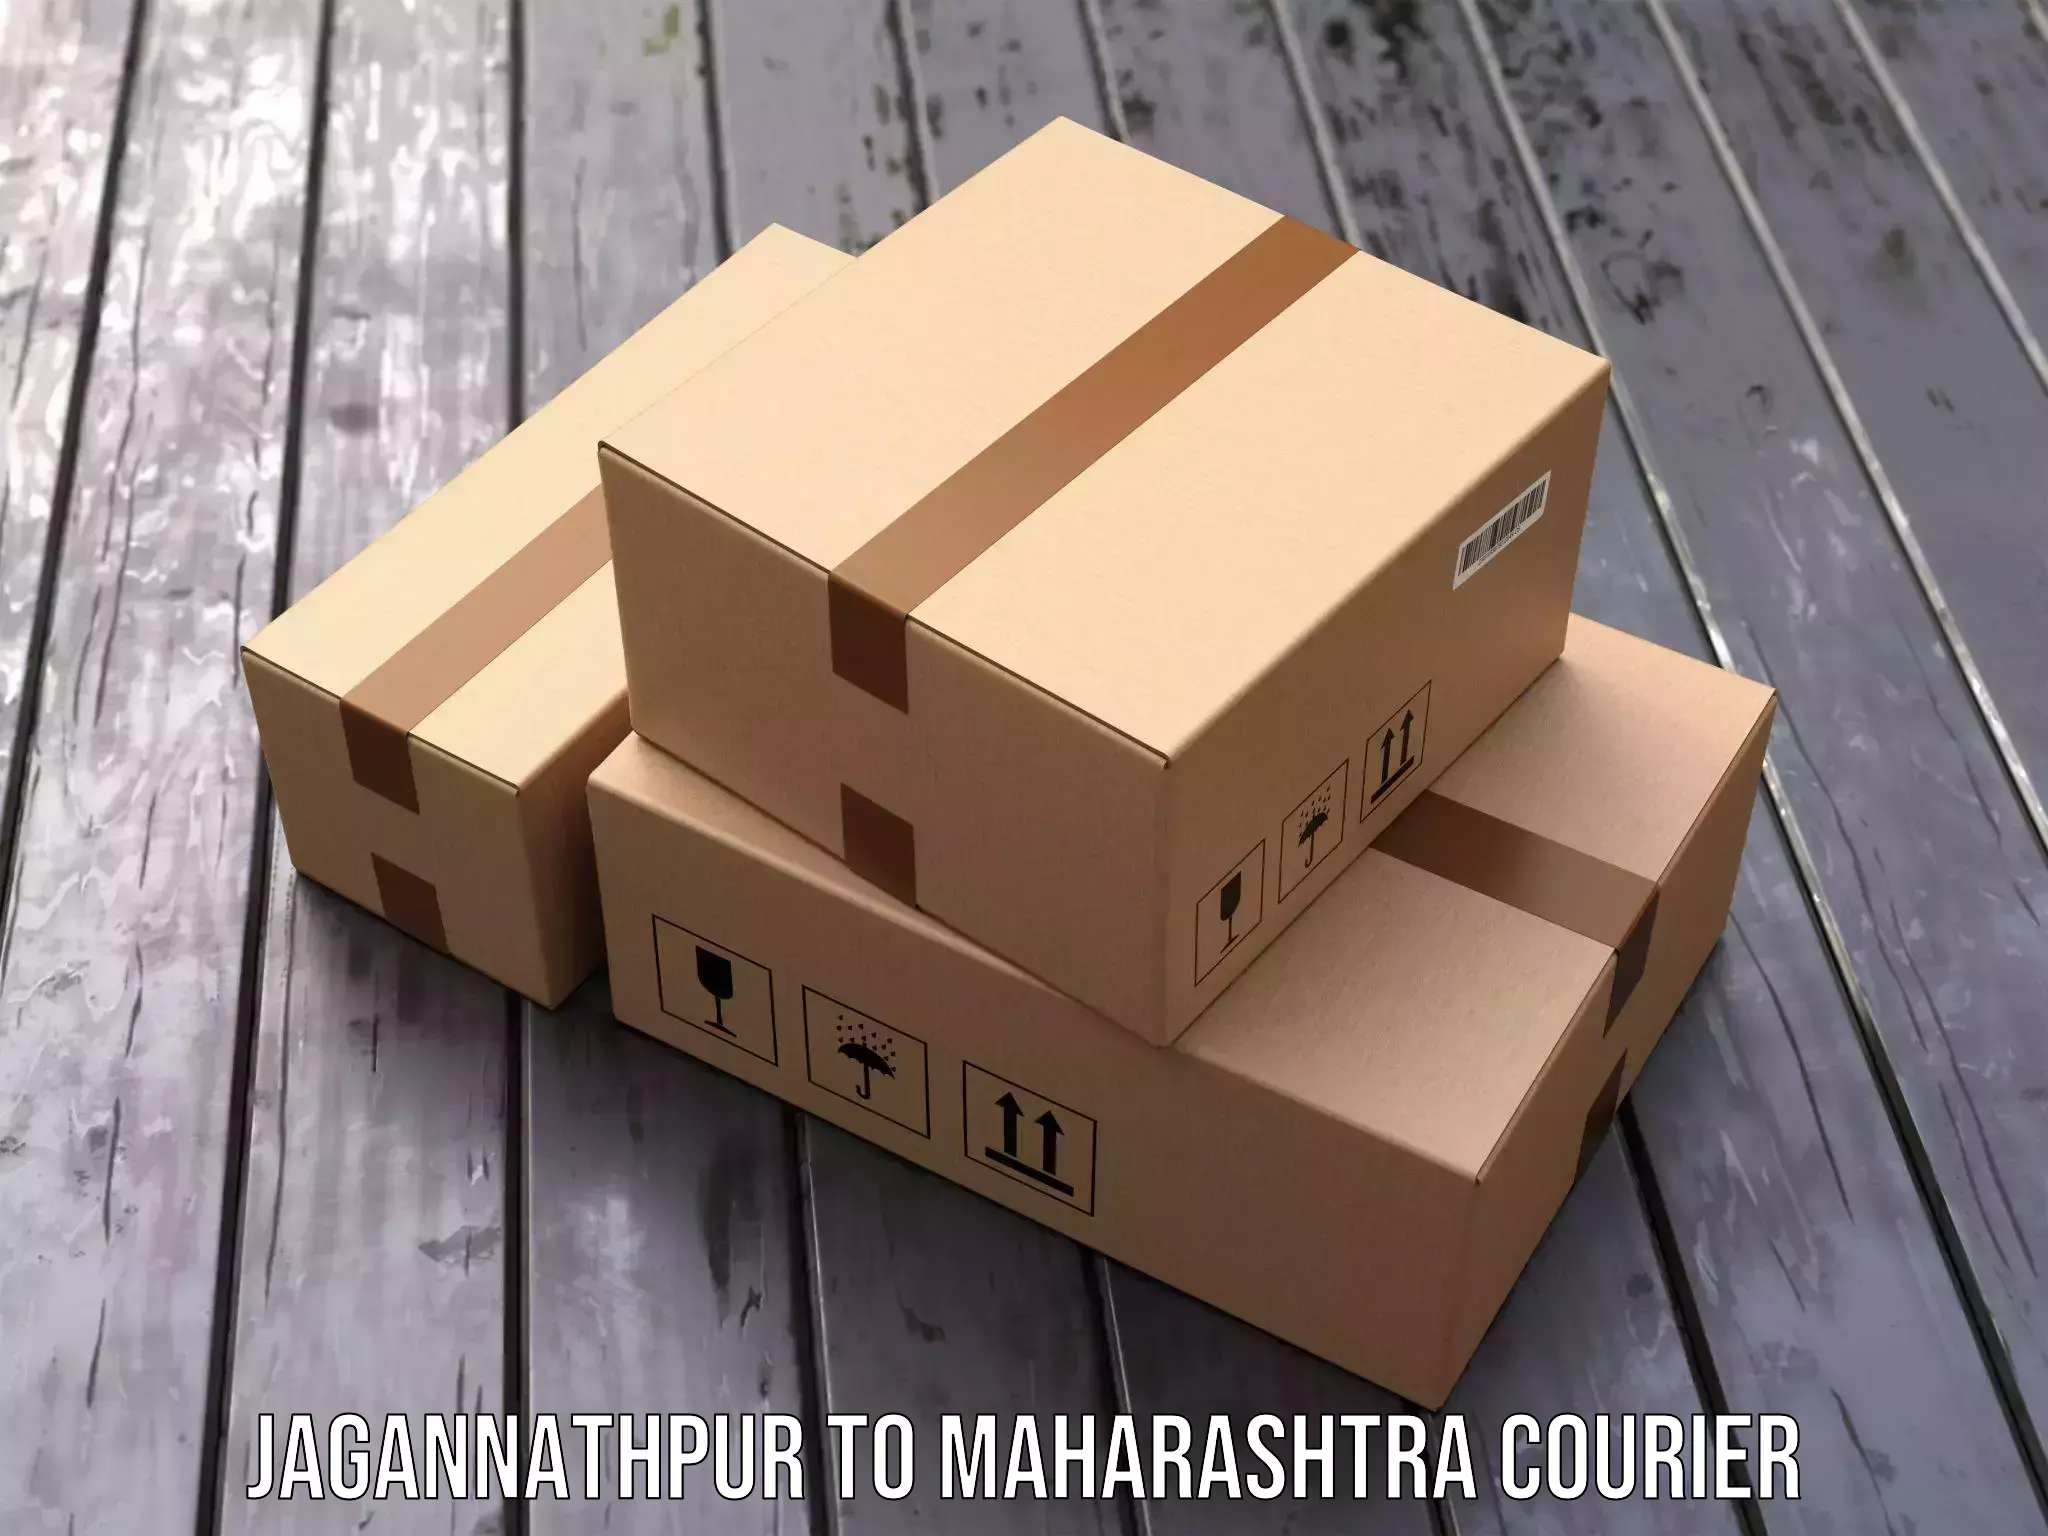 Modern courier technology Jagannathpur to Khandala Pune